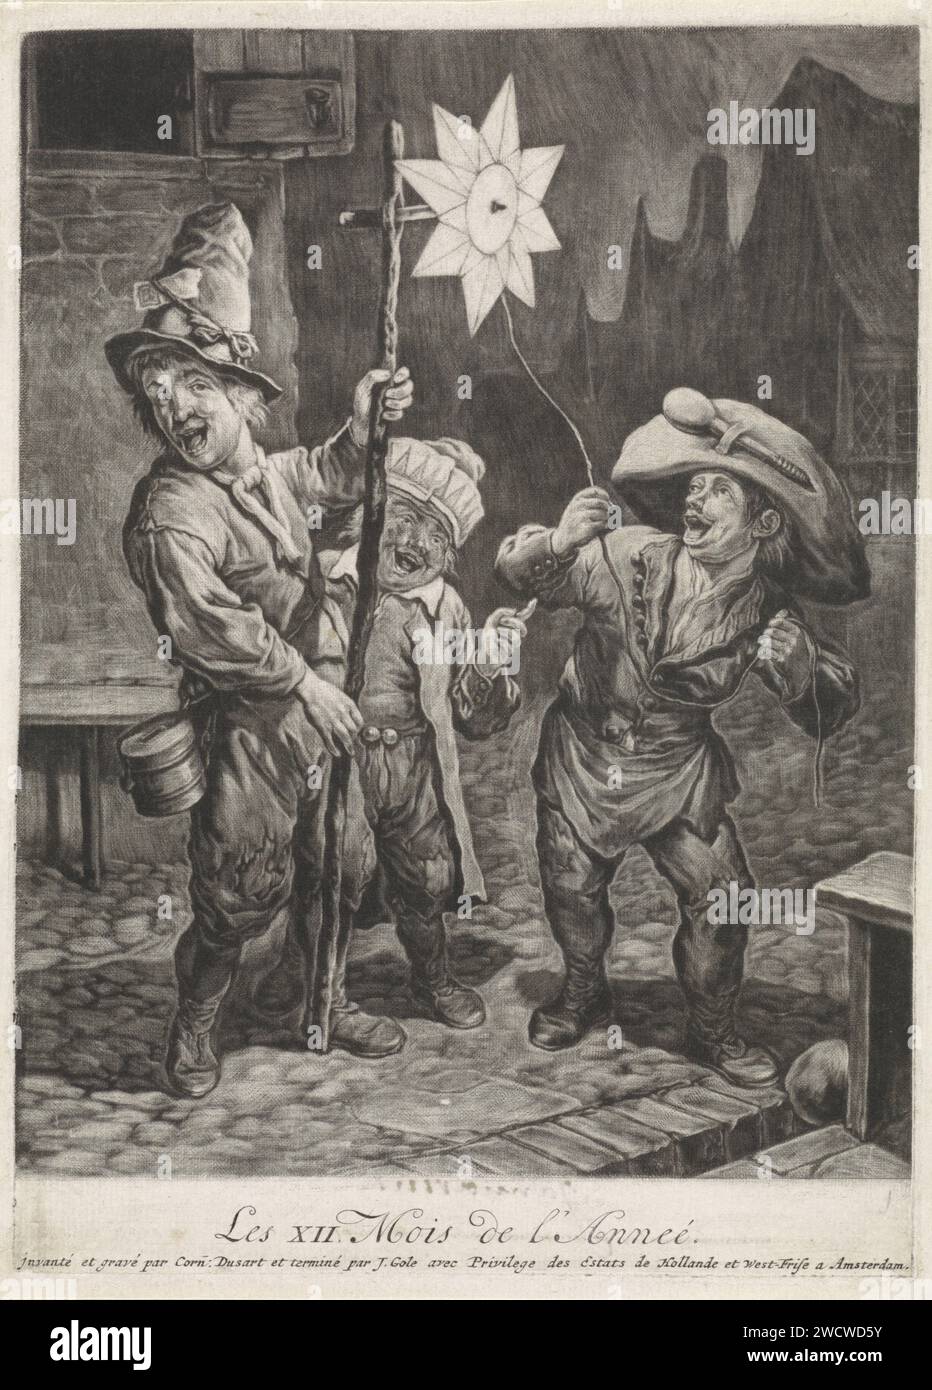 Janvier, Cornelis Dusart, 1679 - 1704 imprimer visage de nuit dans une ville avec trois enfants célébrant l'Epiphanie. Un des enfants tient une étoile sur un bâton. L'estampe est l'estampe titre d'une série de douze estampes avec les douze mois de l'année. Imprimeur : Haarlem Editeur : Amsterdam gravure sur papier Twelfth Night, tombant généralement à la veille du 6 janvier. étoiles. Janvier et ses 'labours' Banque D'Images